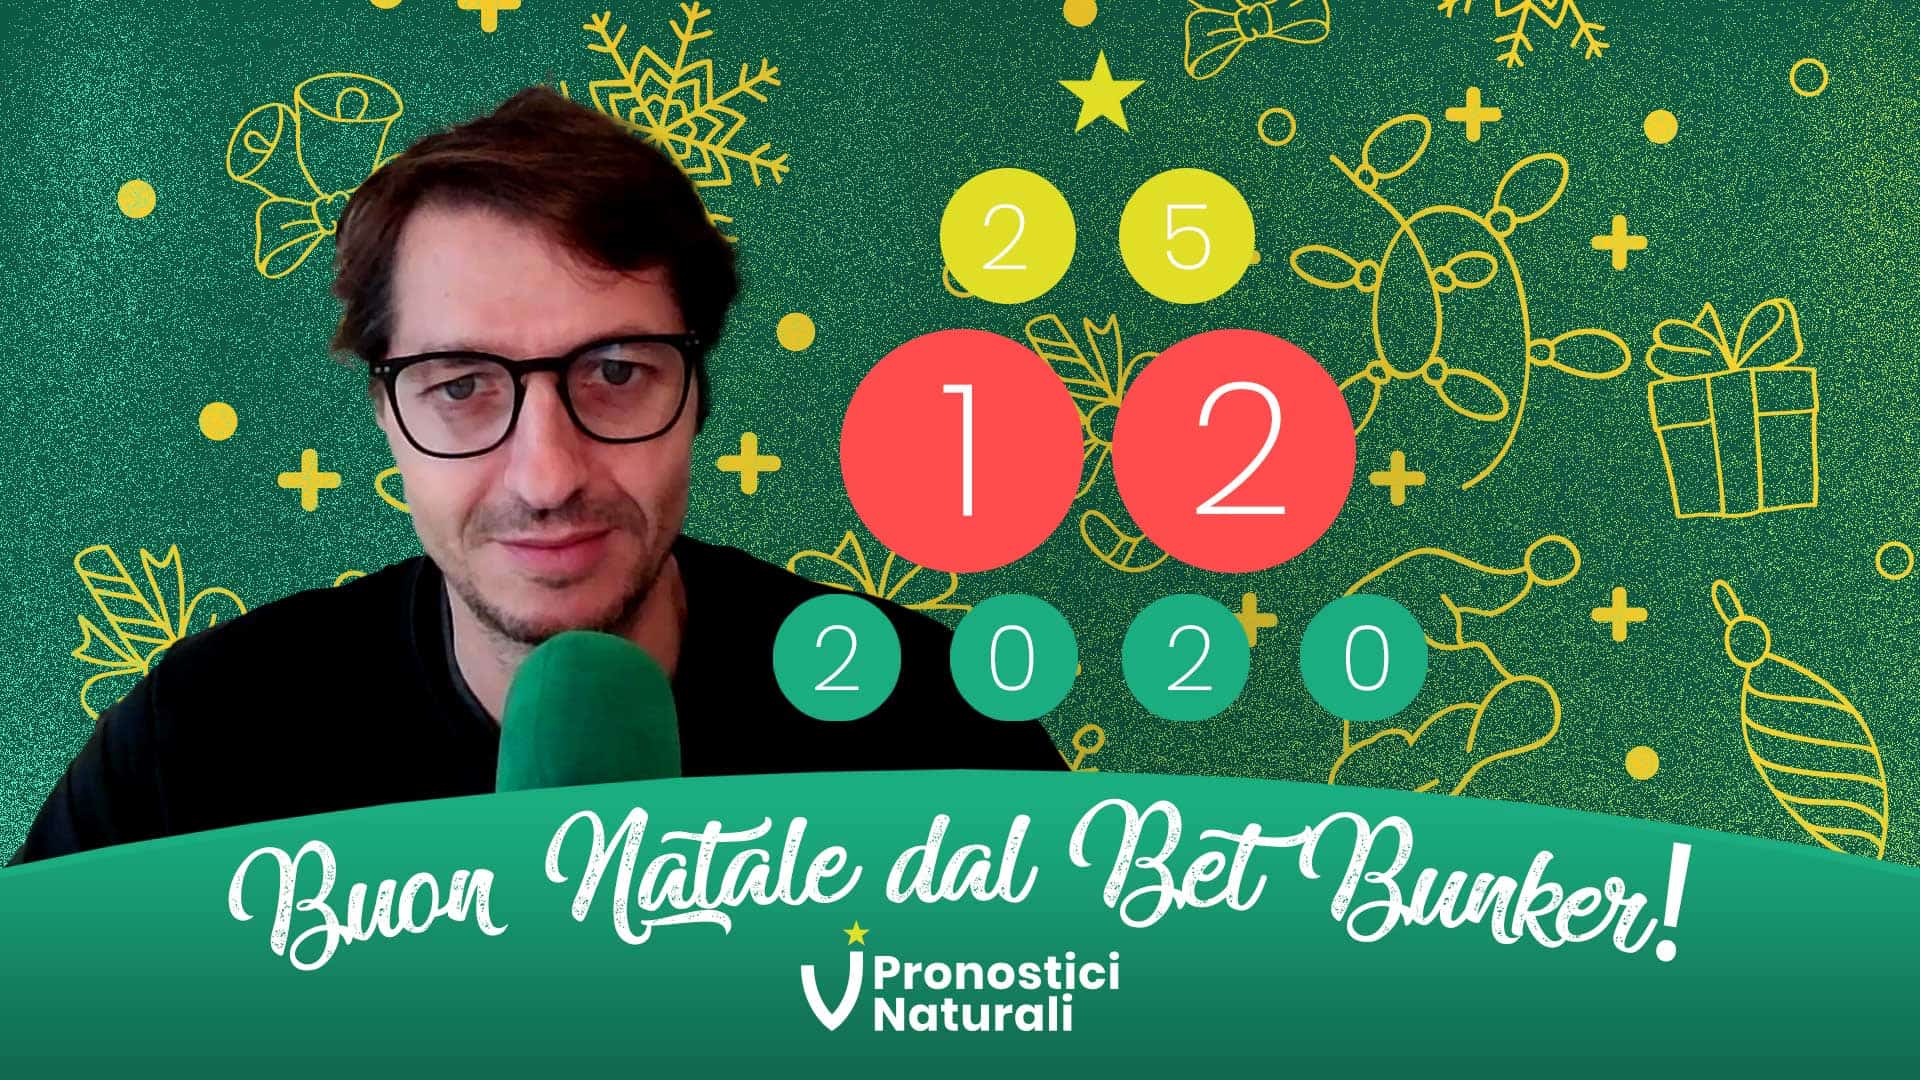 Pronostici Naturali Video Analisi Scommesse Betting Calcio Speciali Natale 2020